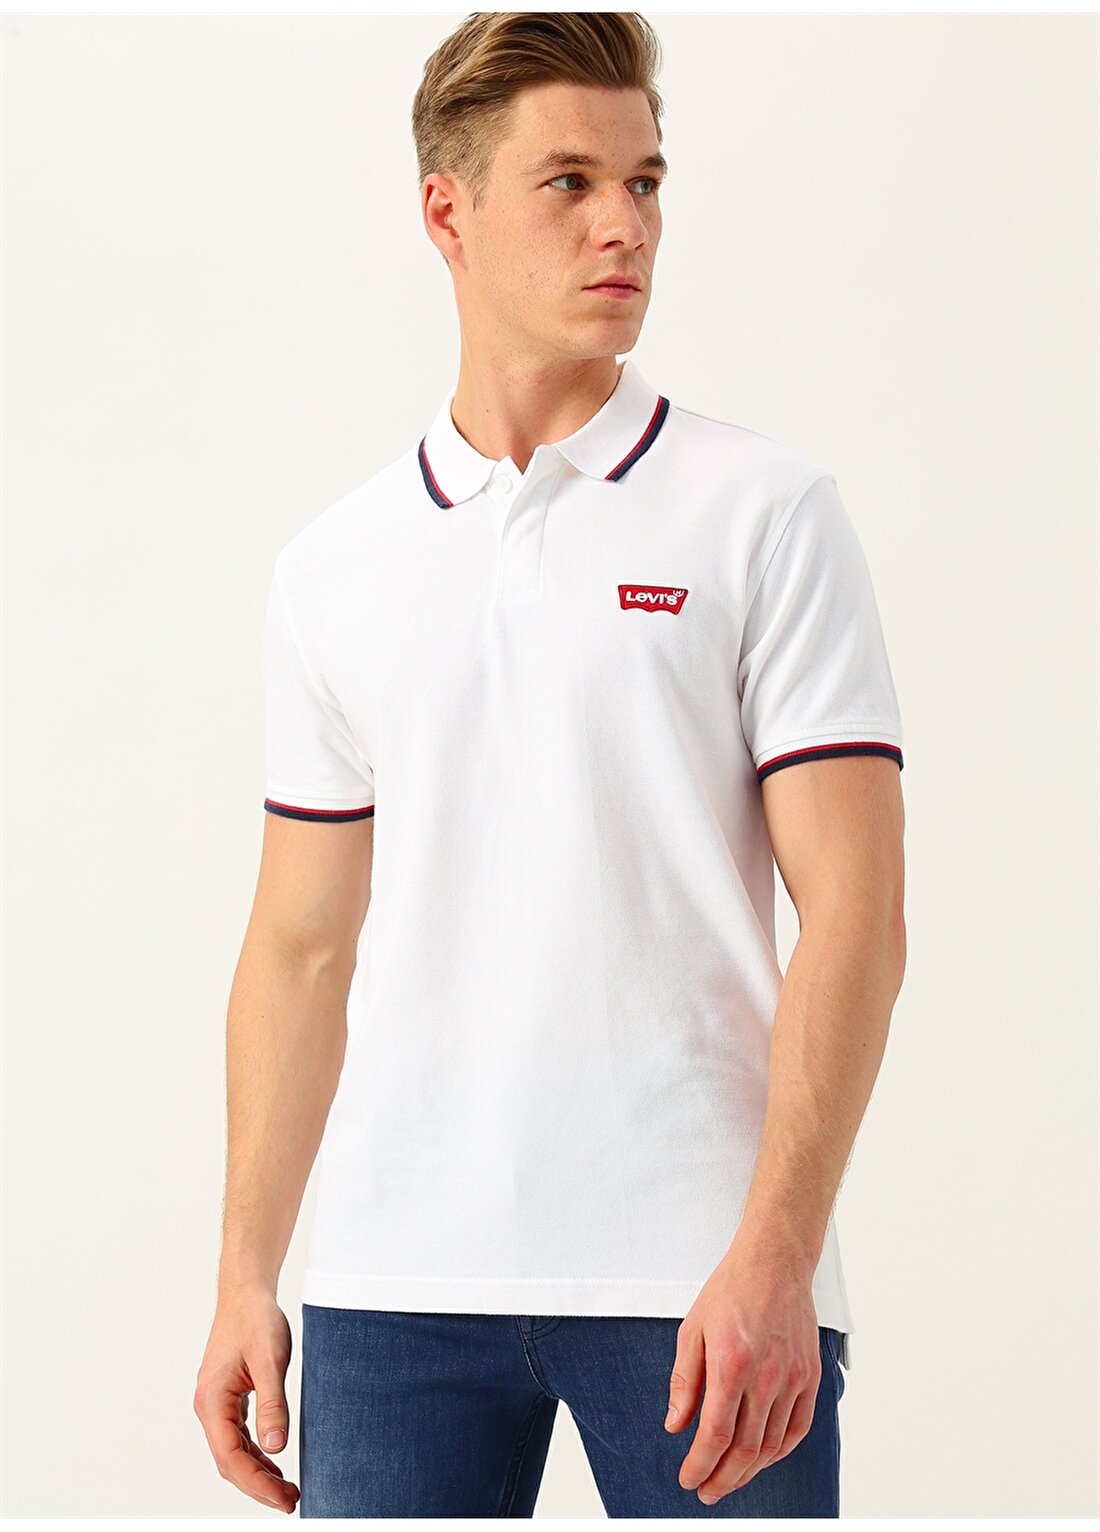 Levis Ss Modern Hm Polo Hm Patch White T-Shirt